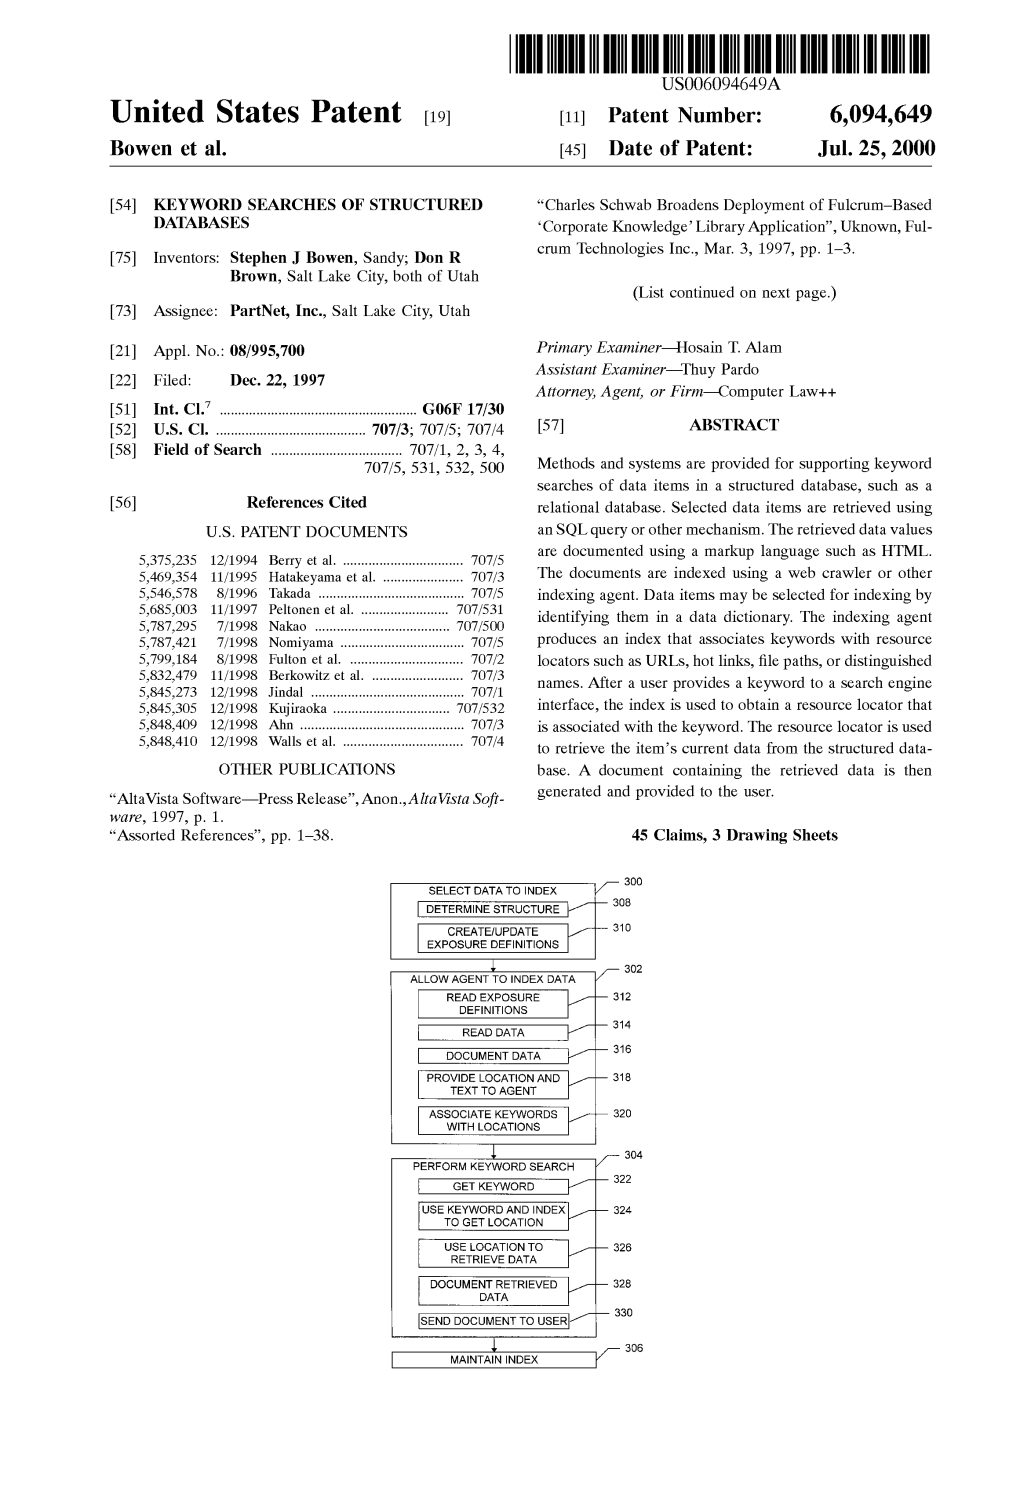 United States Patent (19) 11 Patent Number: 6,094,649 Bowen Et Al